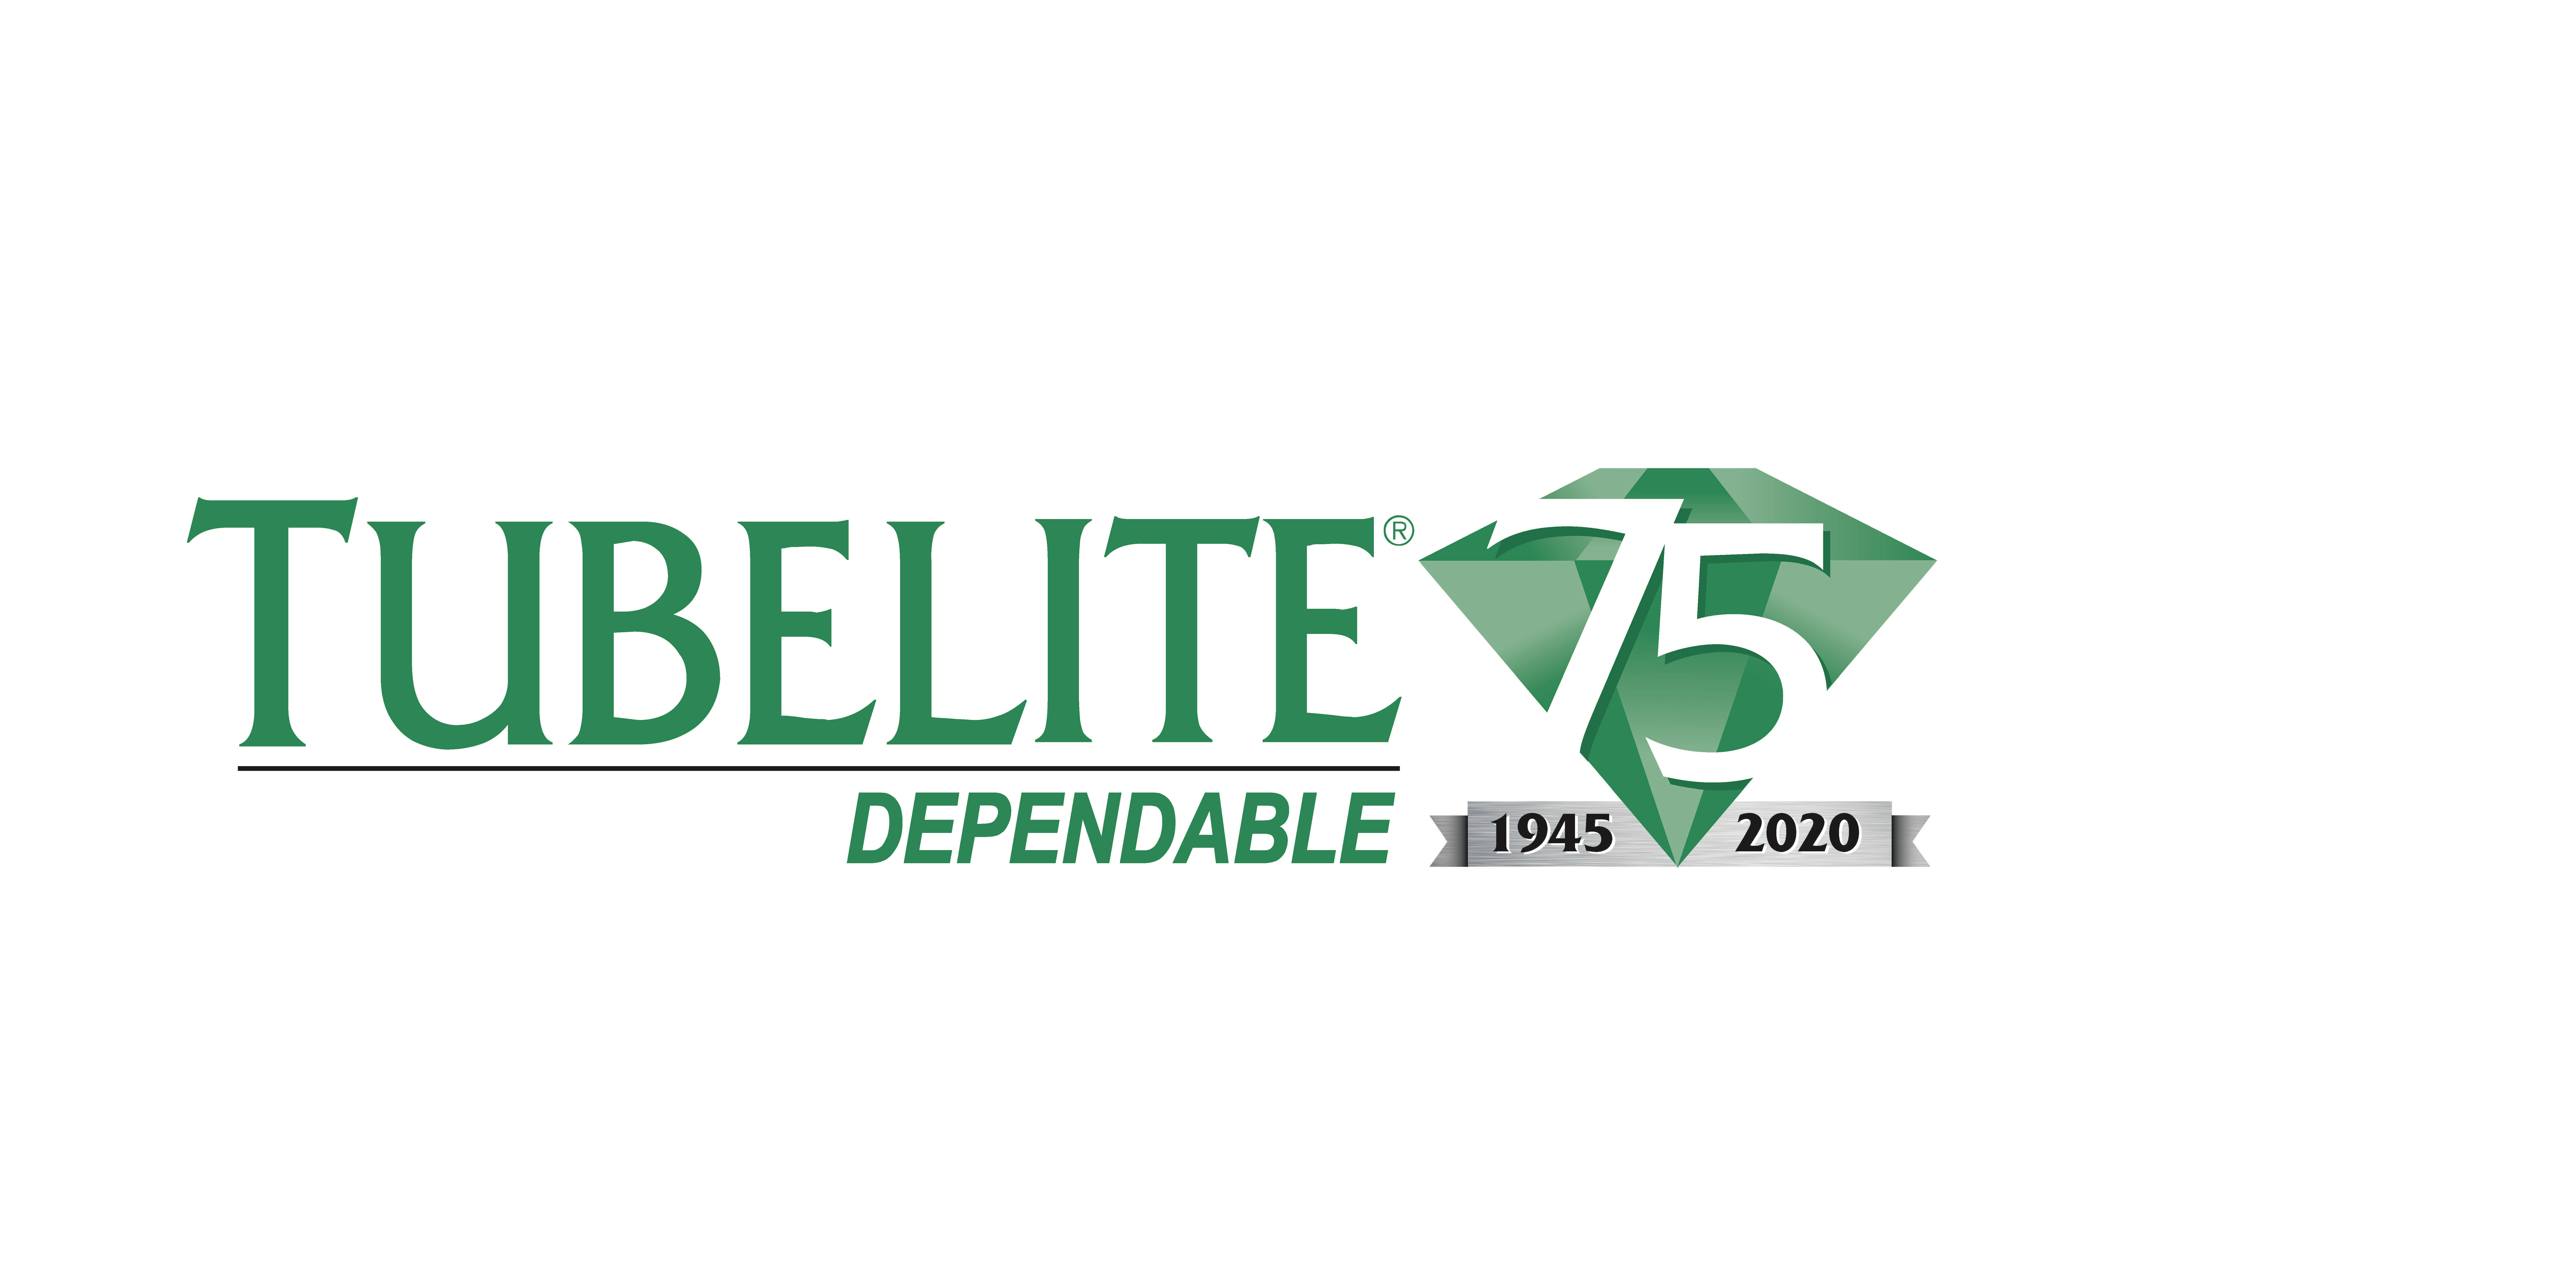 Tubelite_75Anniversary_Logo.jpg